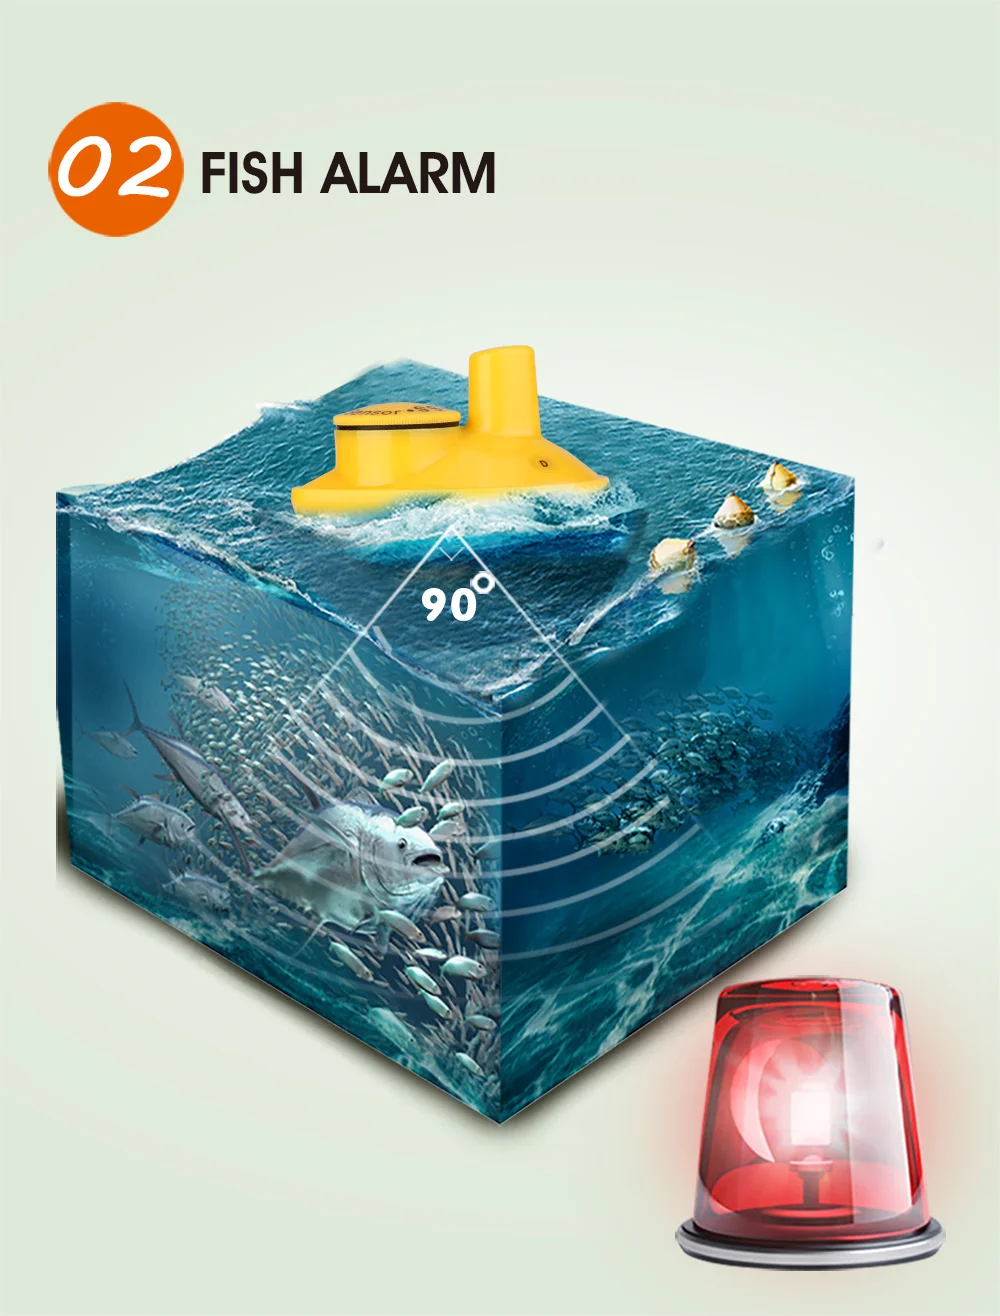 Рыболокатор LUCKY Sonar Findfish Deep беспроводной 120 м Беспроводная рыболовная сигнализация морской 40 М130 футов более глубокий рыболокатор эхолот